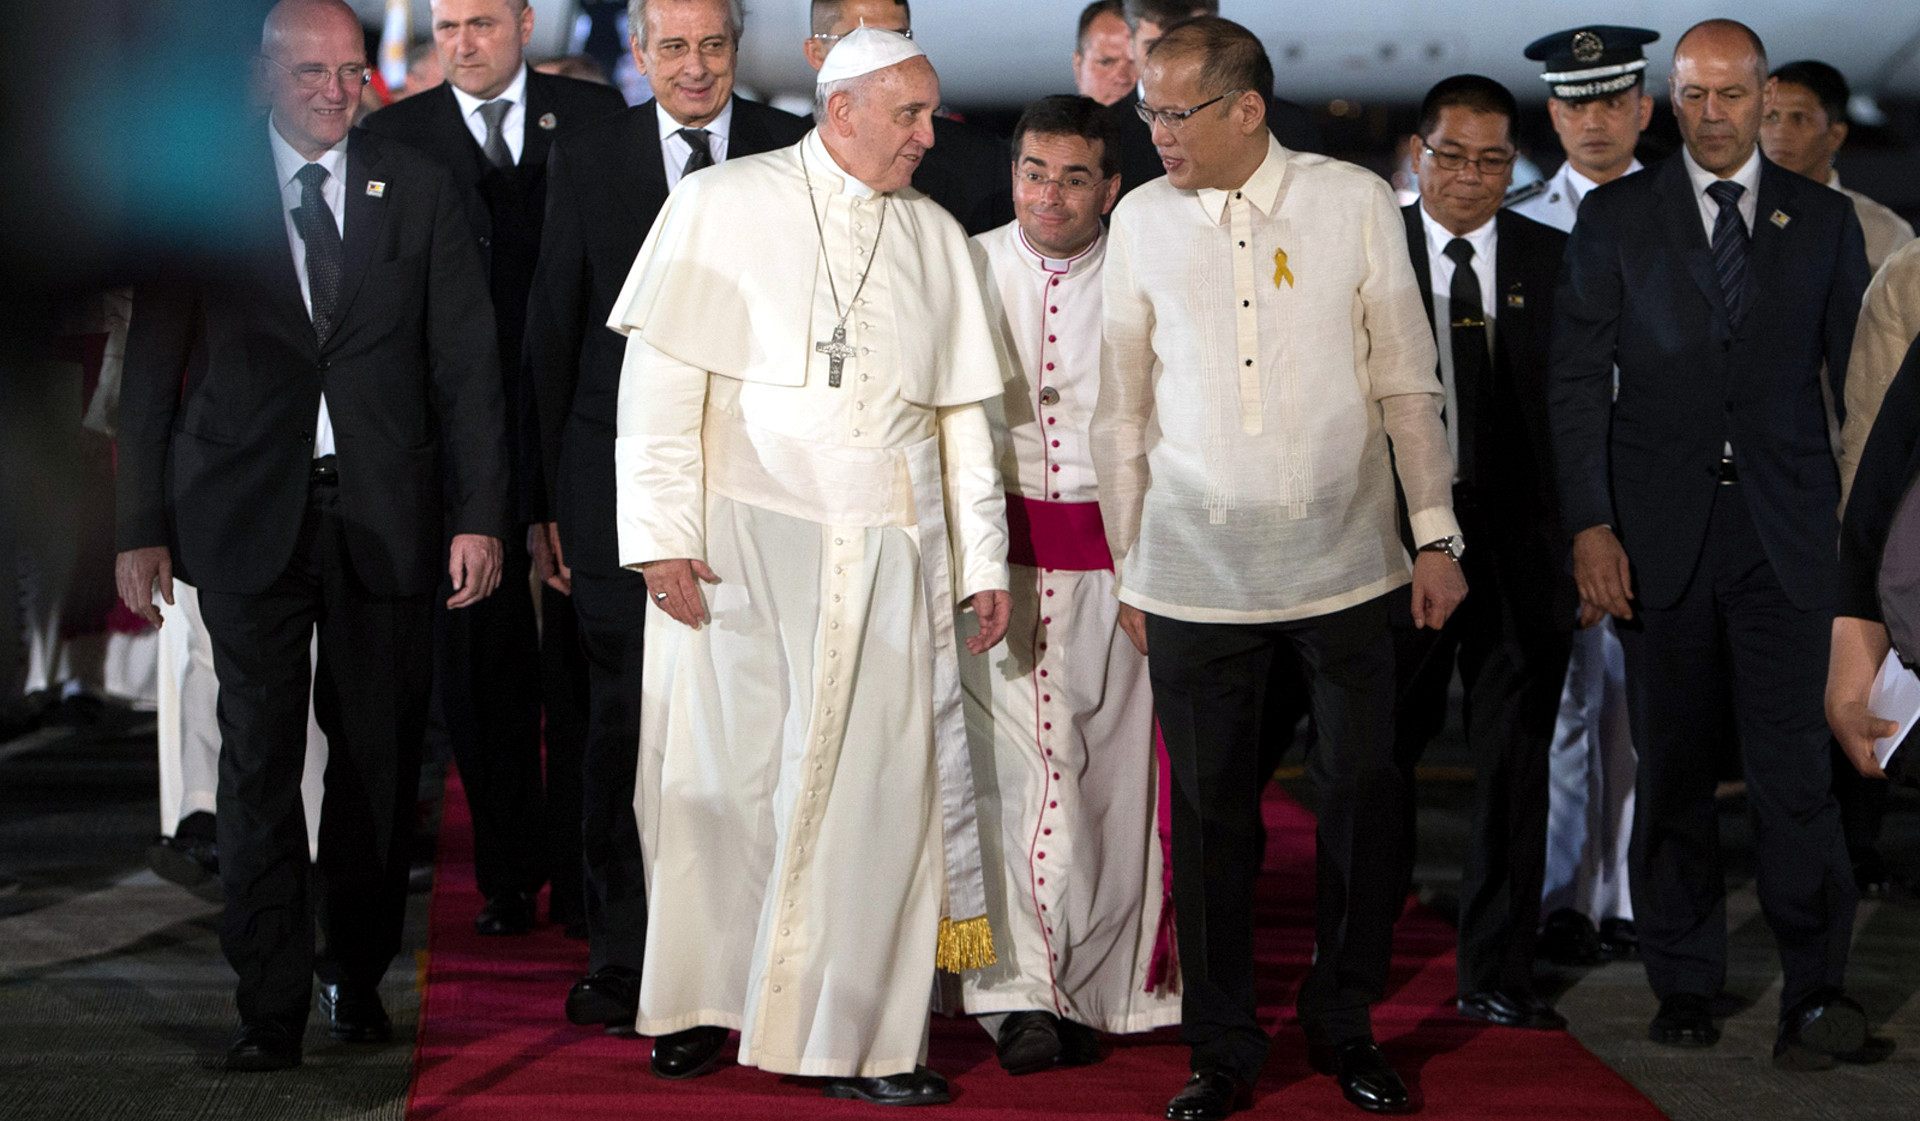 Papst Franziskus gemeinsam mit Benigno Aquino (r), dem Präsidenten der Philippinen, bei seiner Ankunft am Flughafen von Manila am 15. Januar